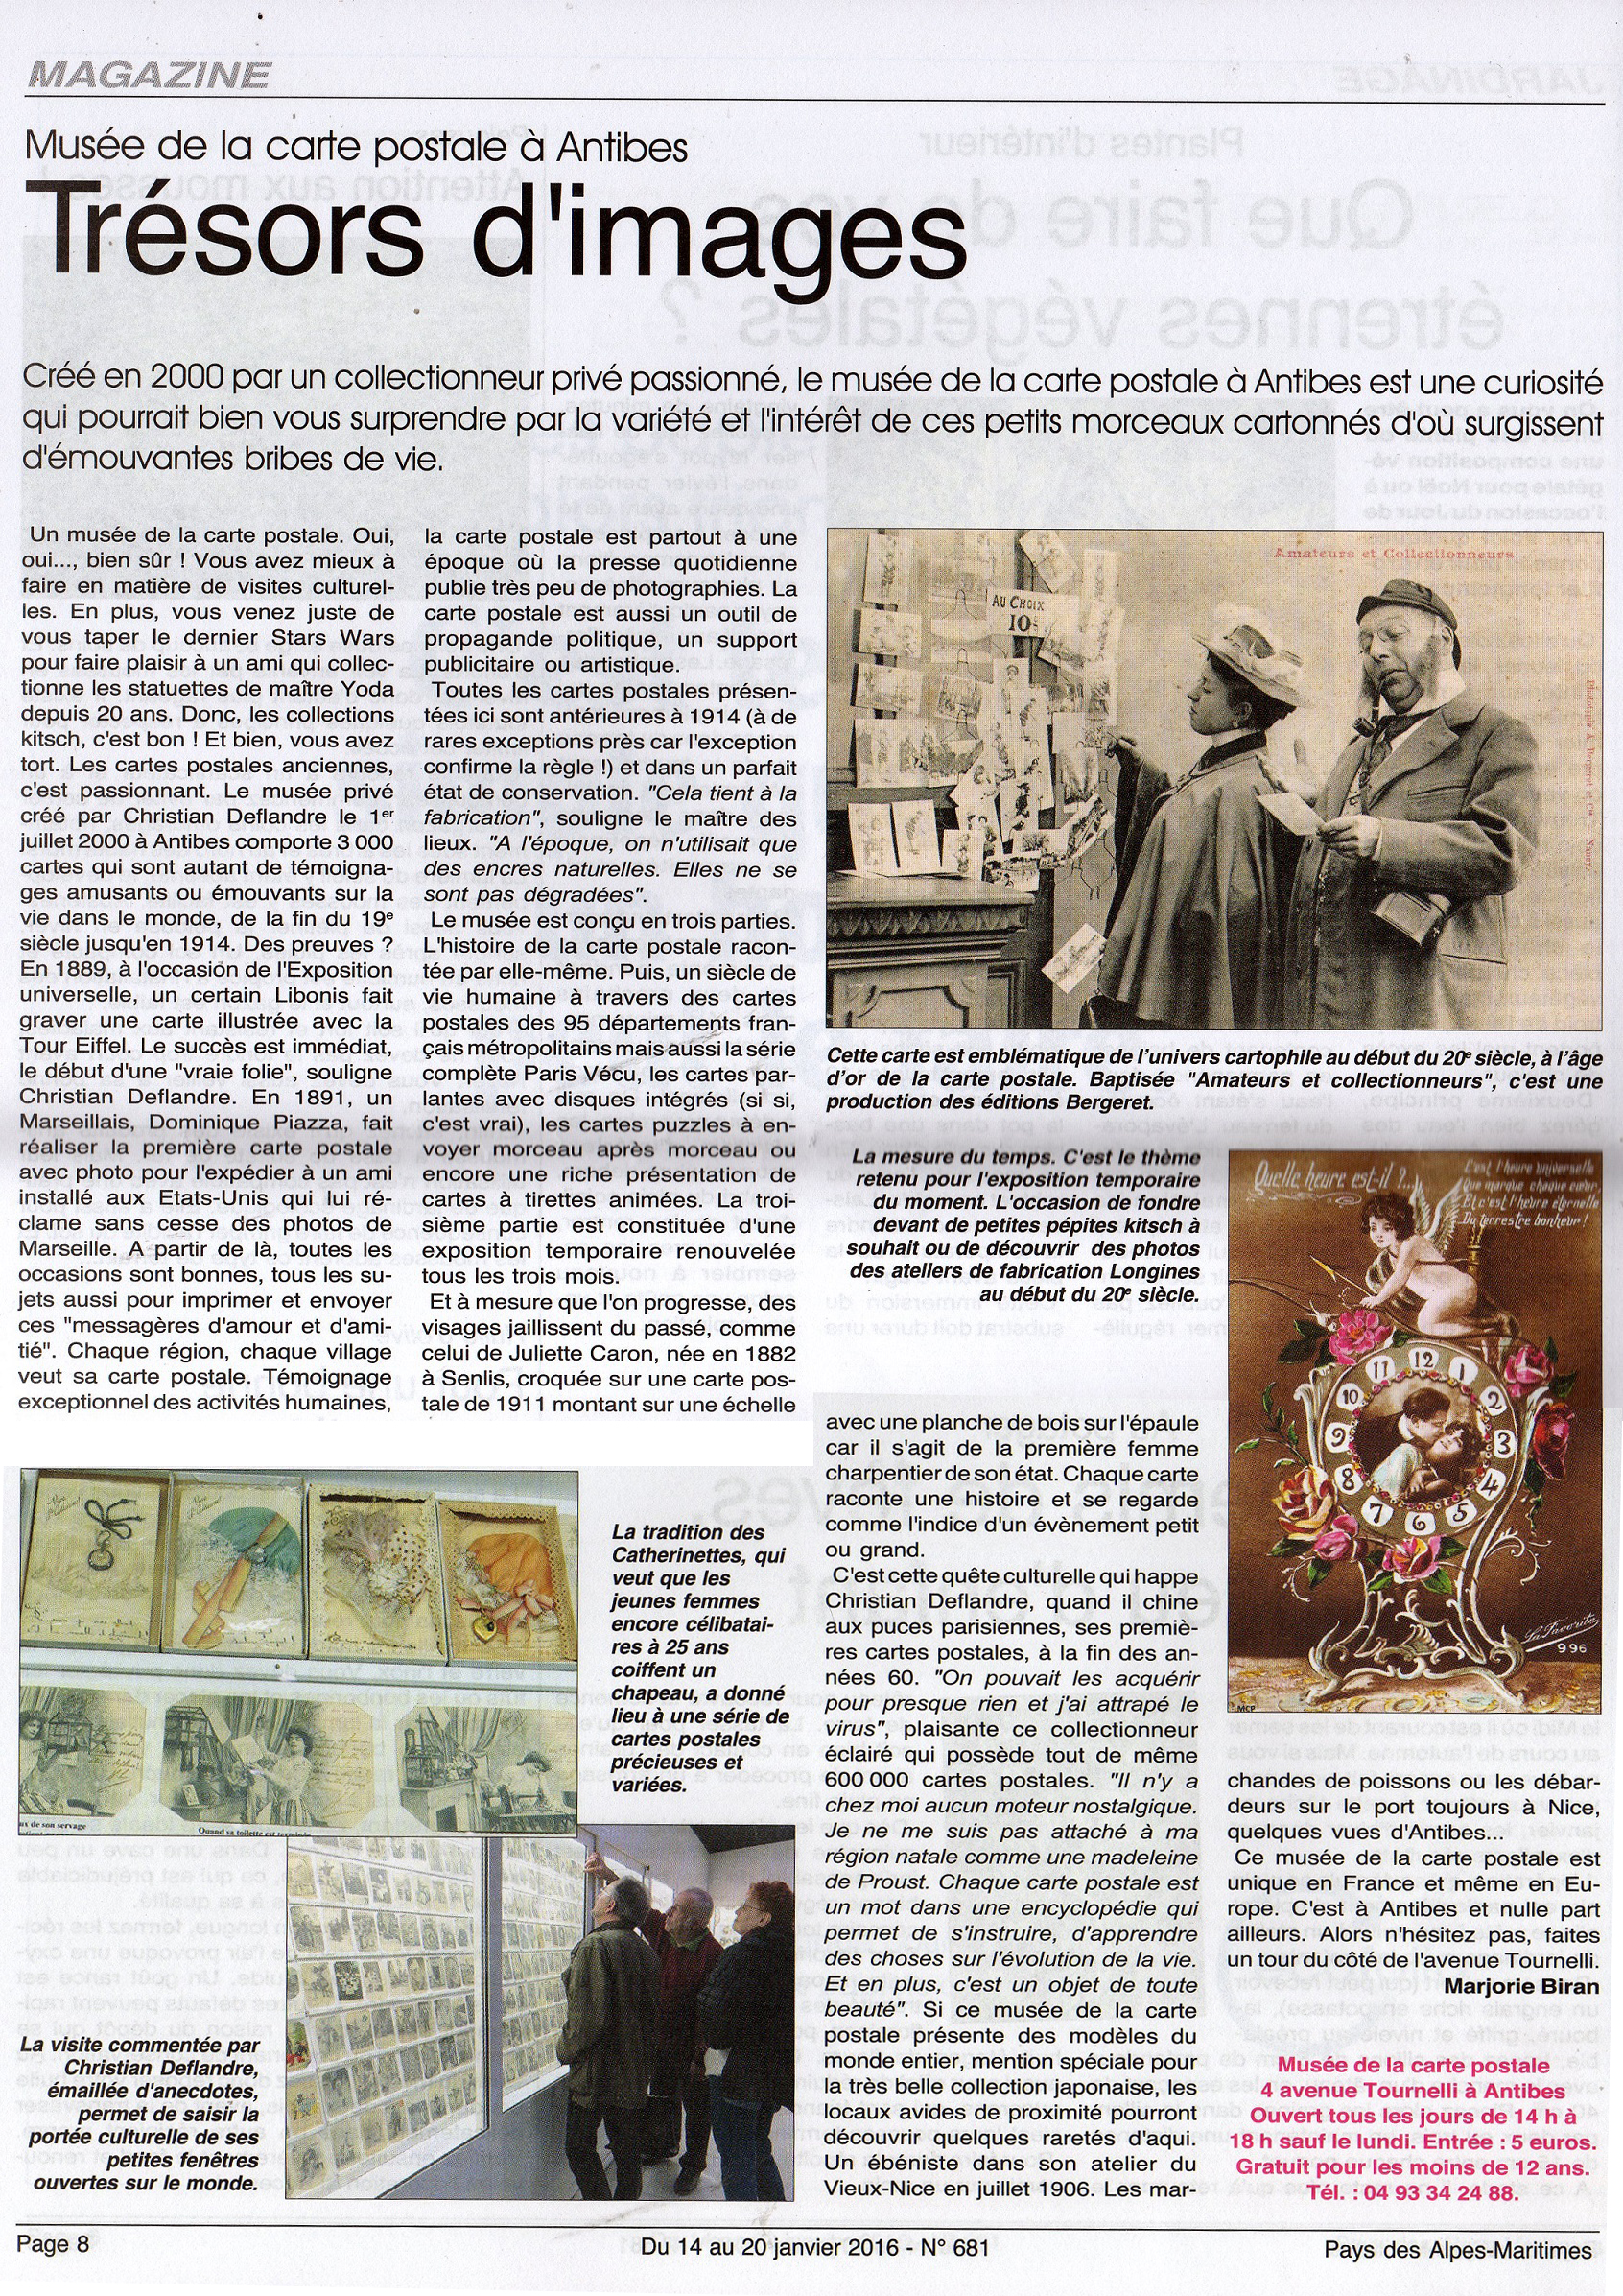 Article de presse du Pays des Alpes Maritimes, de janvier 2016 parlant du musée de la carte postale, d'Antibes.